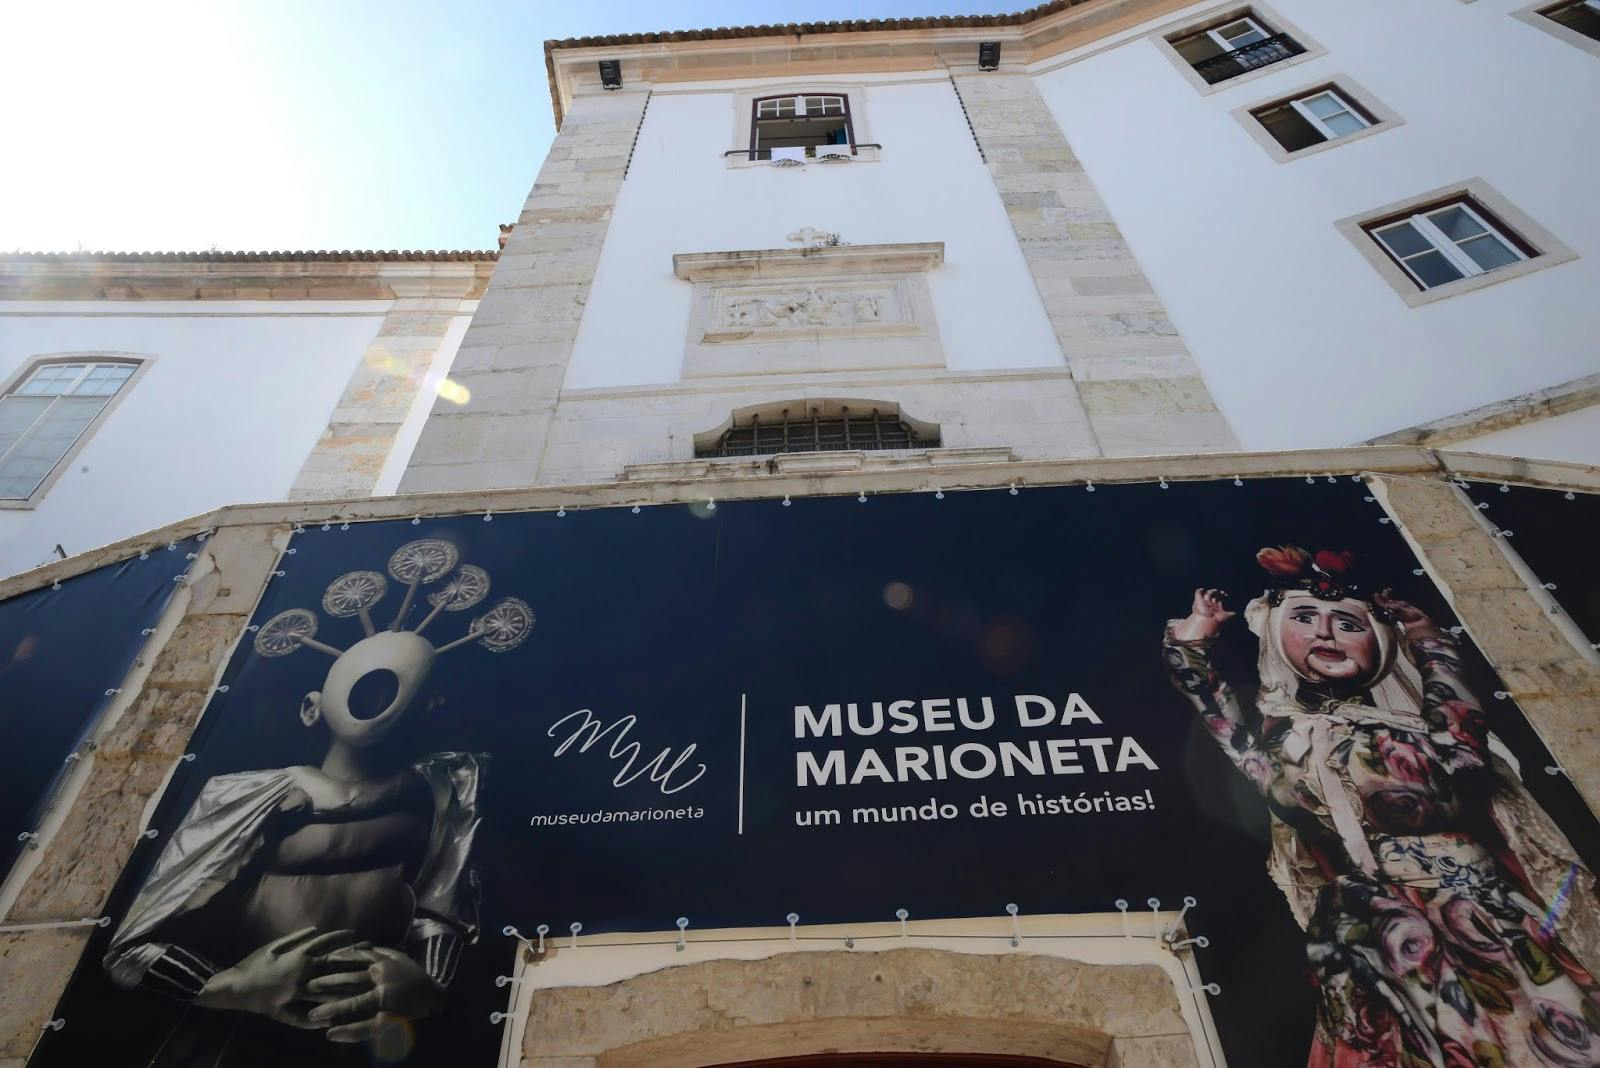 Image - Museu da Marioneta